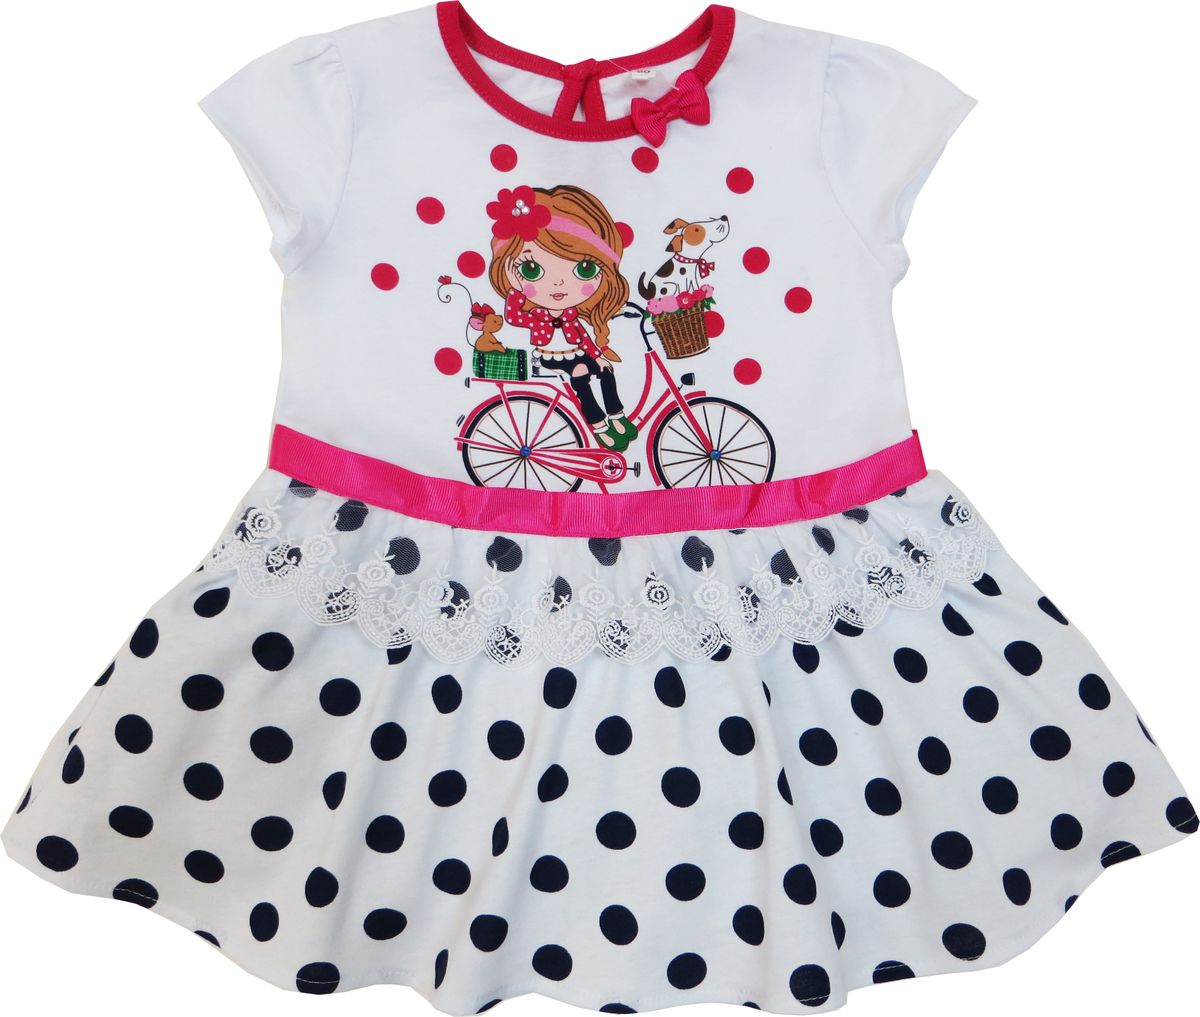 Платье Soni Kids Каникулы Мари, цвет: белый, красный. Л7105001-80к. Размер 80